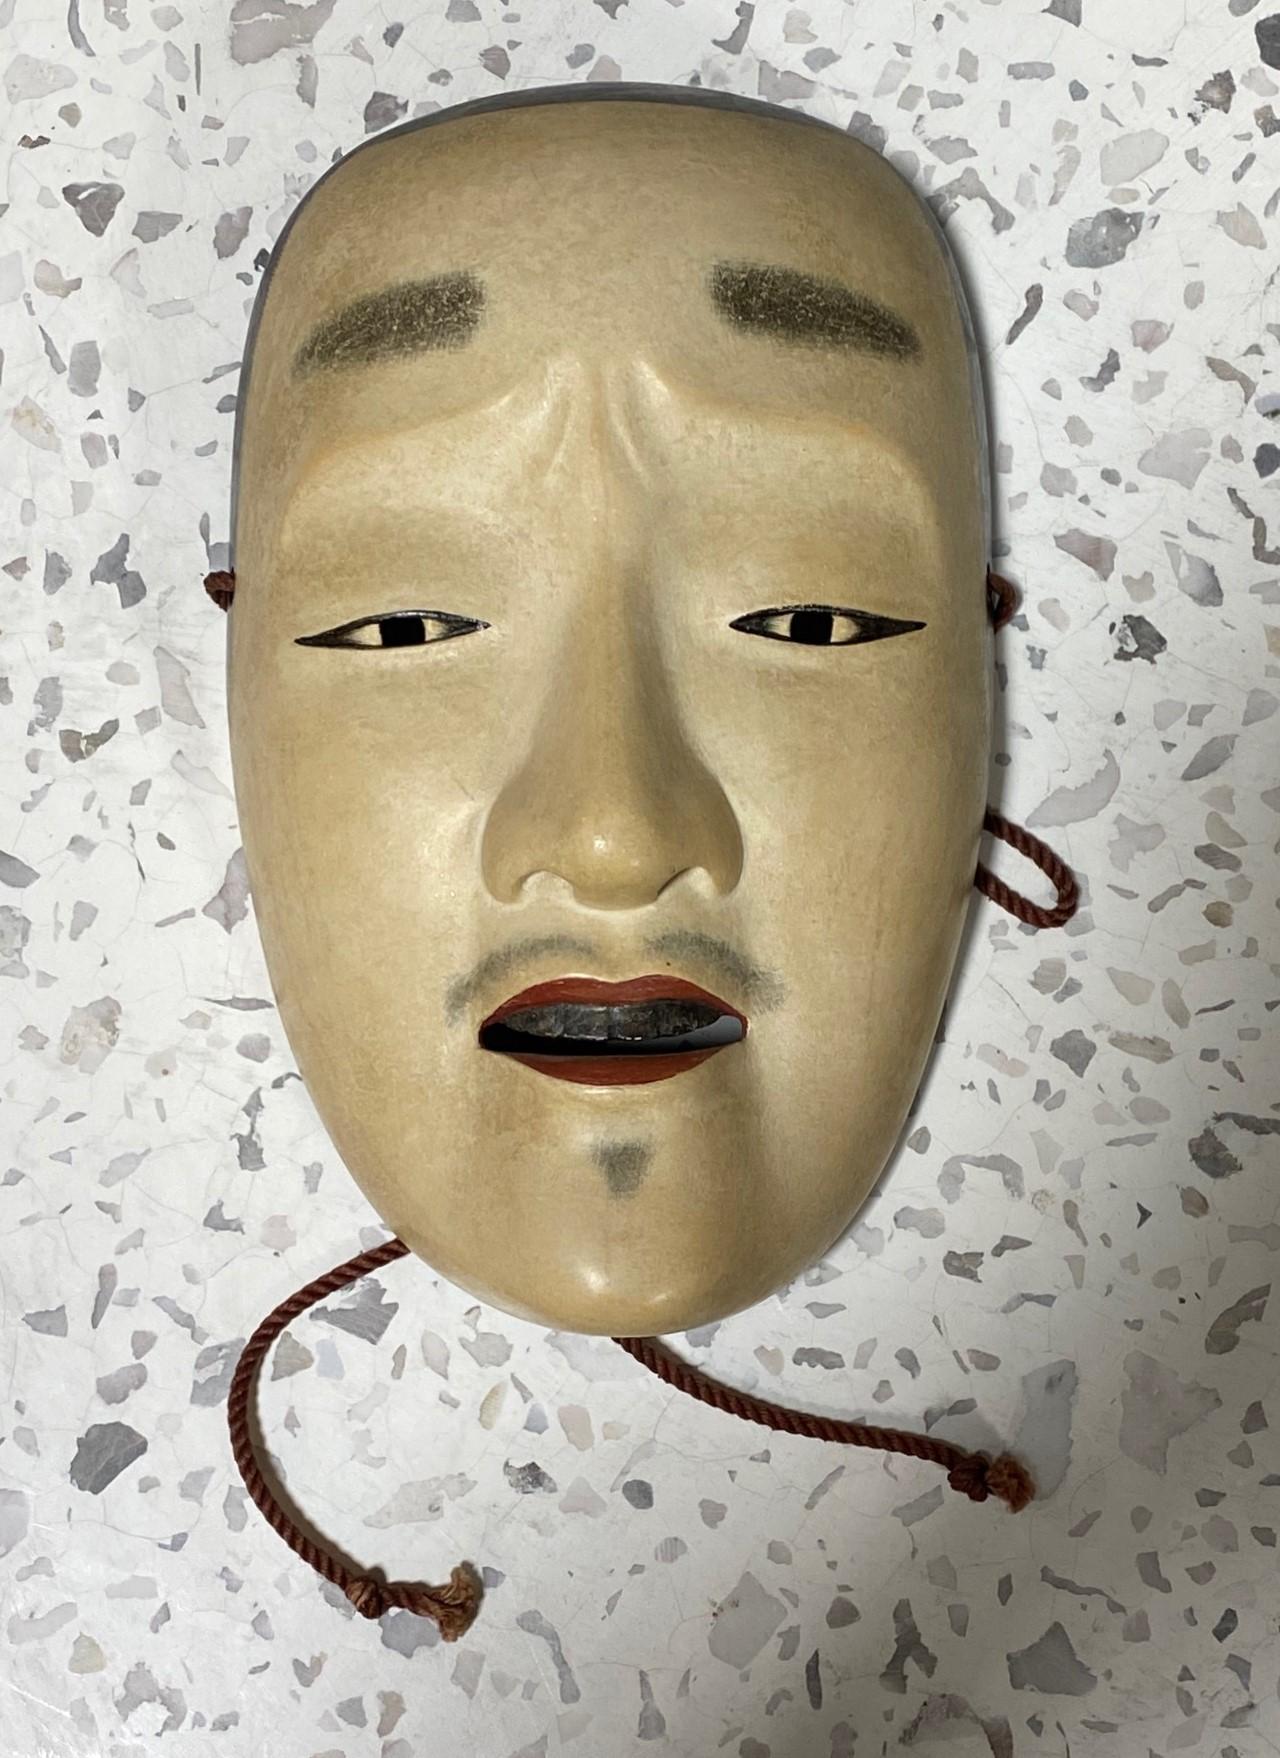 Un masque magnifique, merveilleusement travaillé et séduisant, conçu pour le théâtre nô japonais.

Le masque est fabriqué et sculpté à la main dans du bois naturel et est signé par le fabricant, manifestement un maître du métier, au verso.

Ce